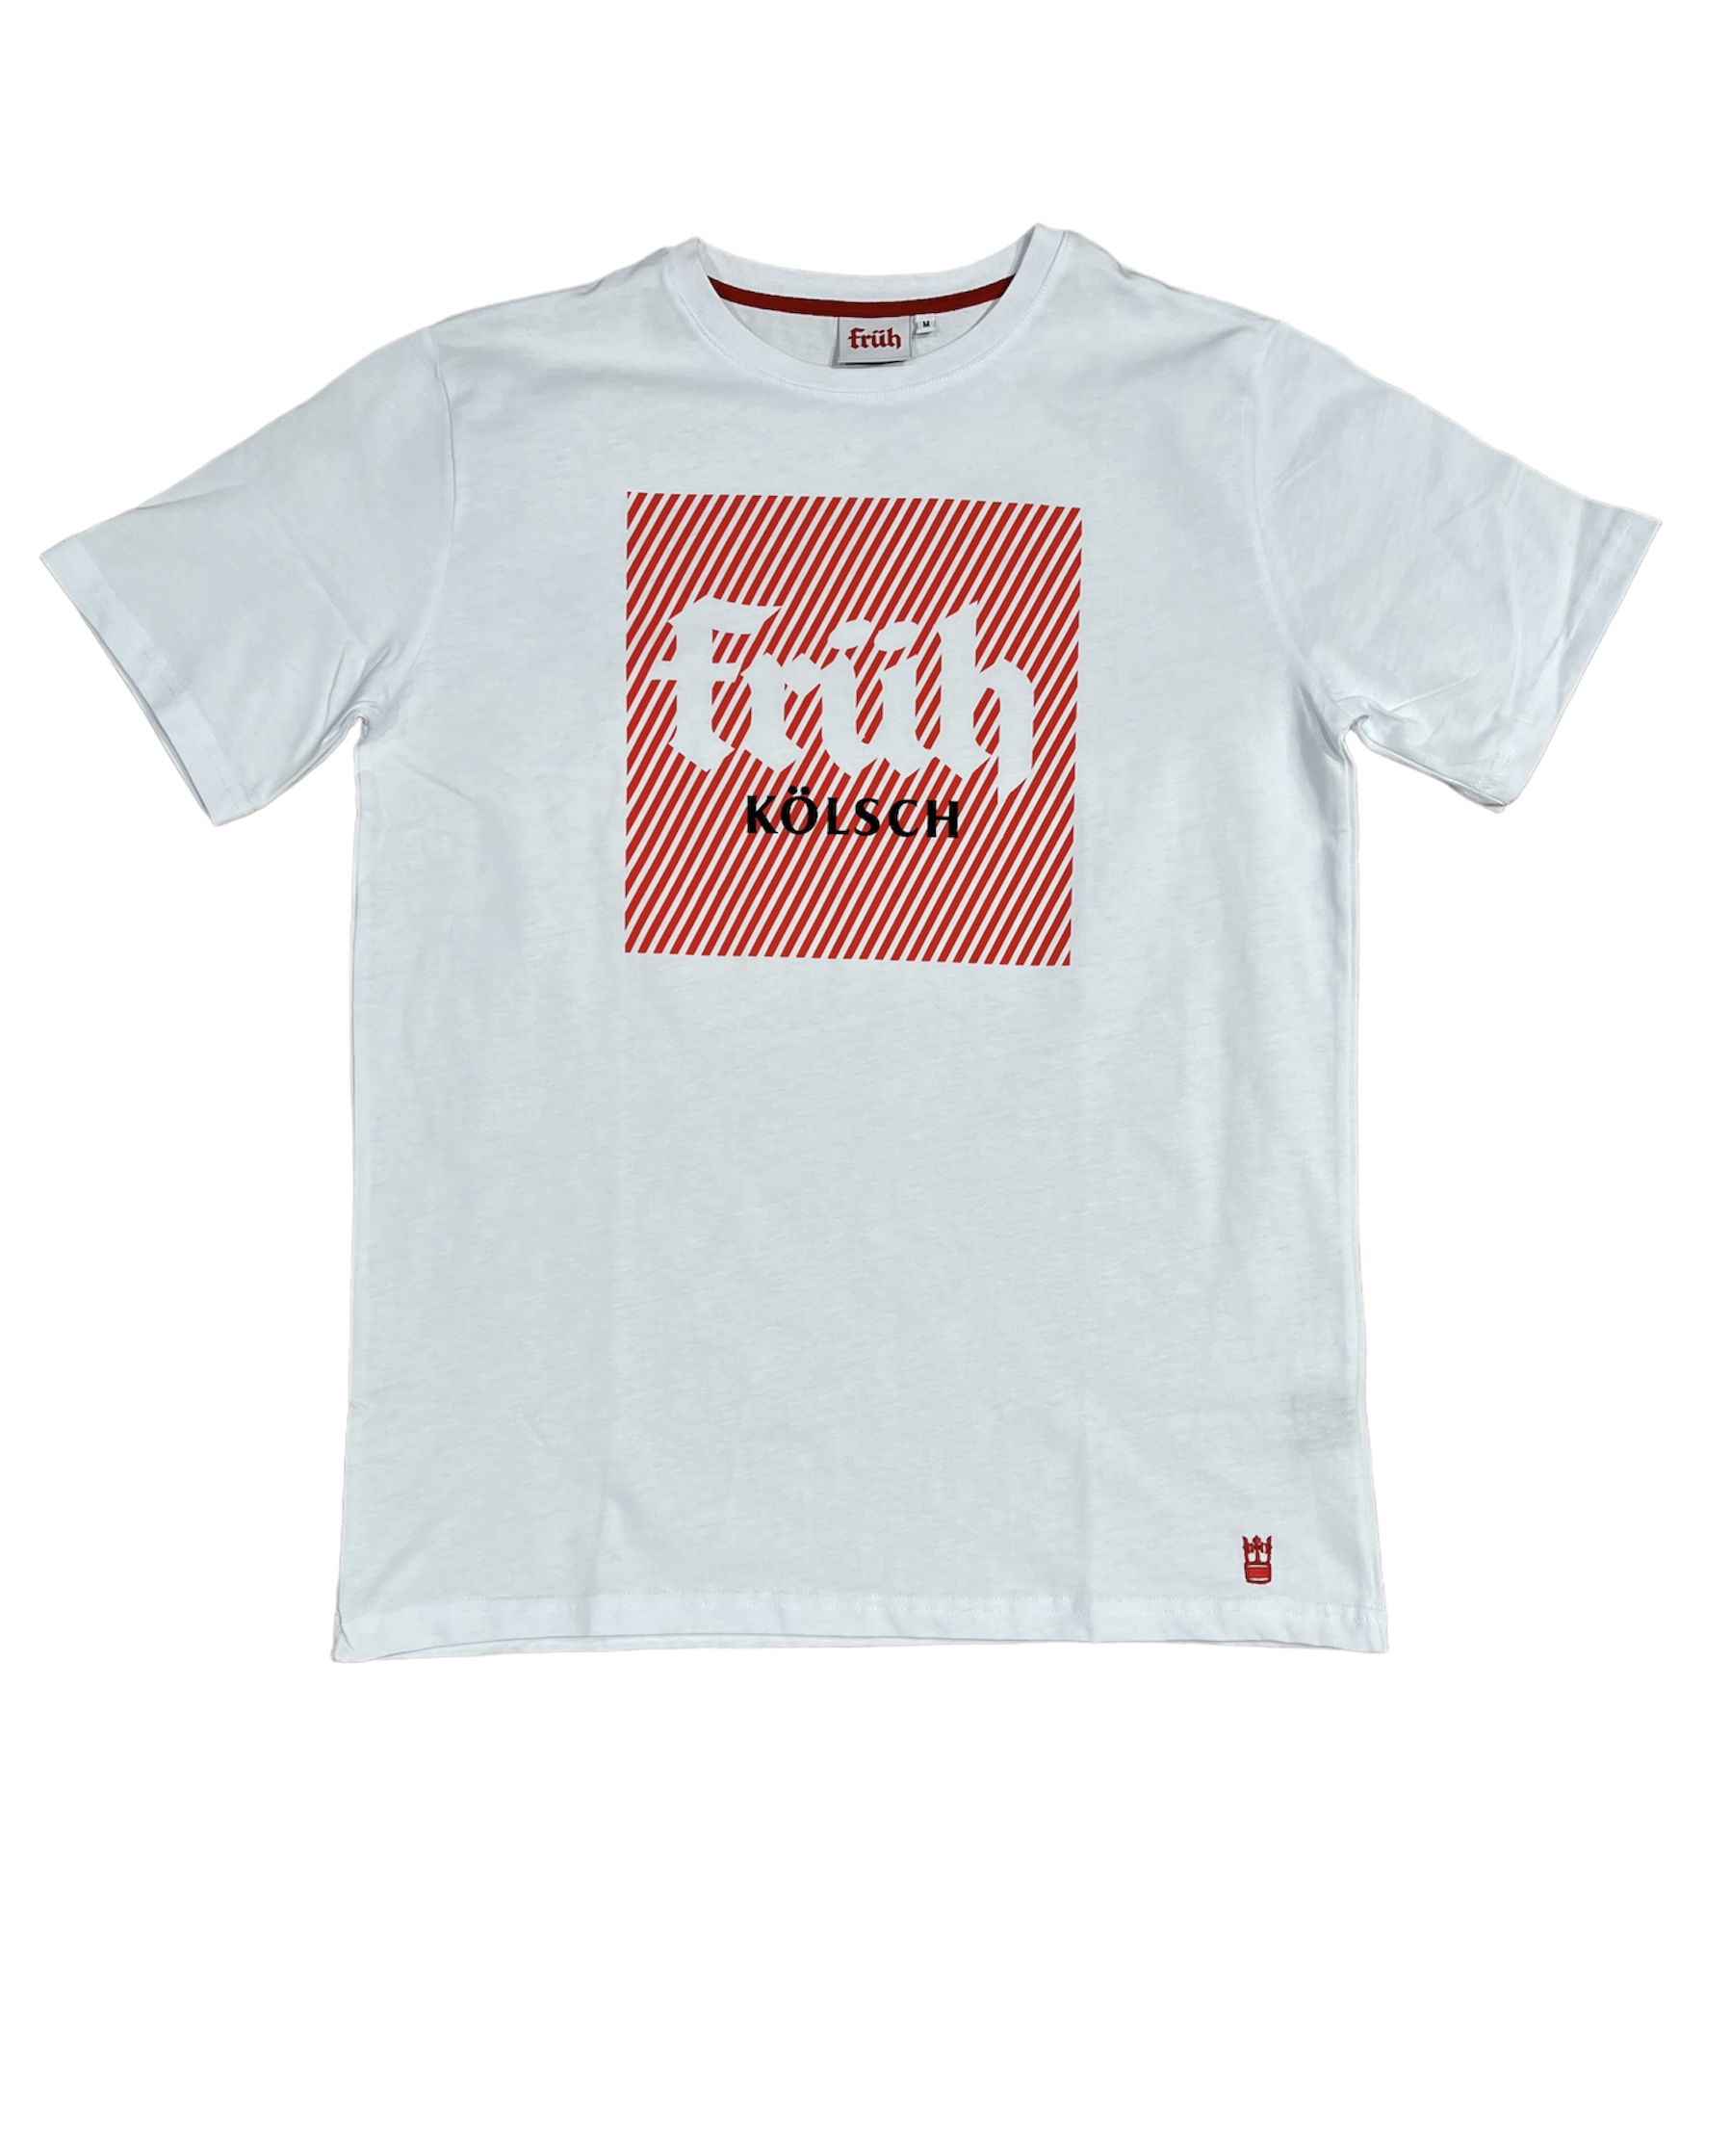 Früh Shirt weiss mit Früh Quadrat Logo S